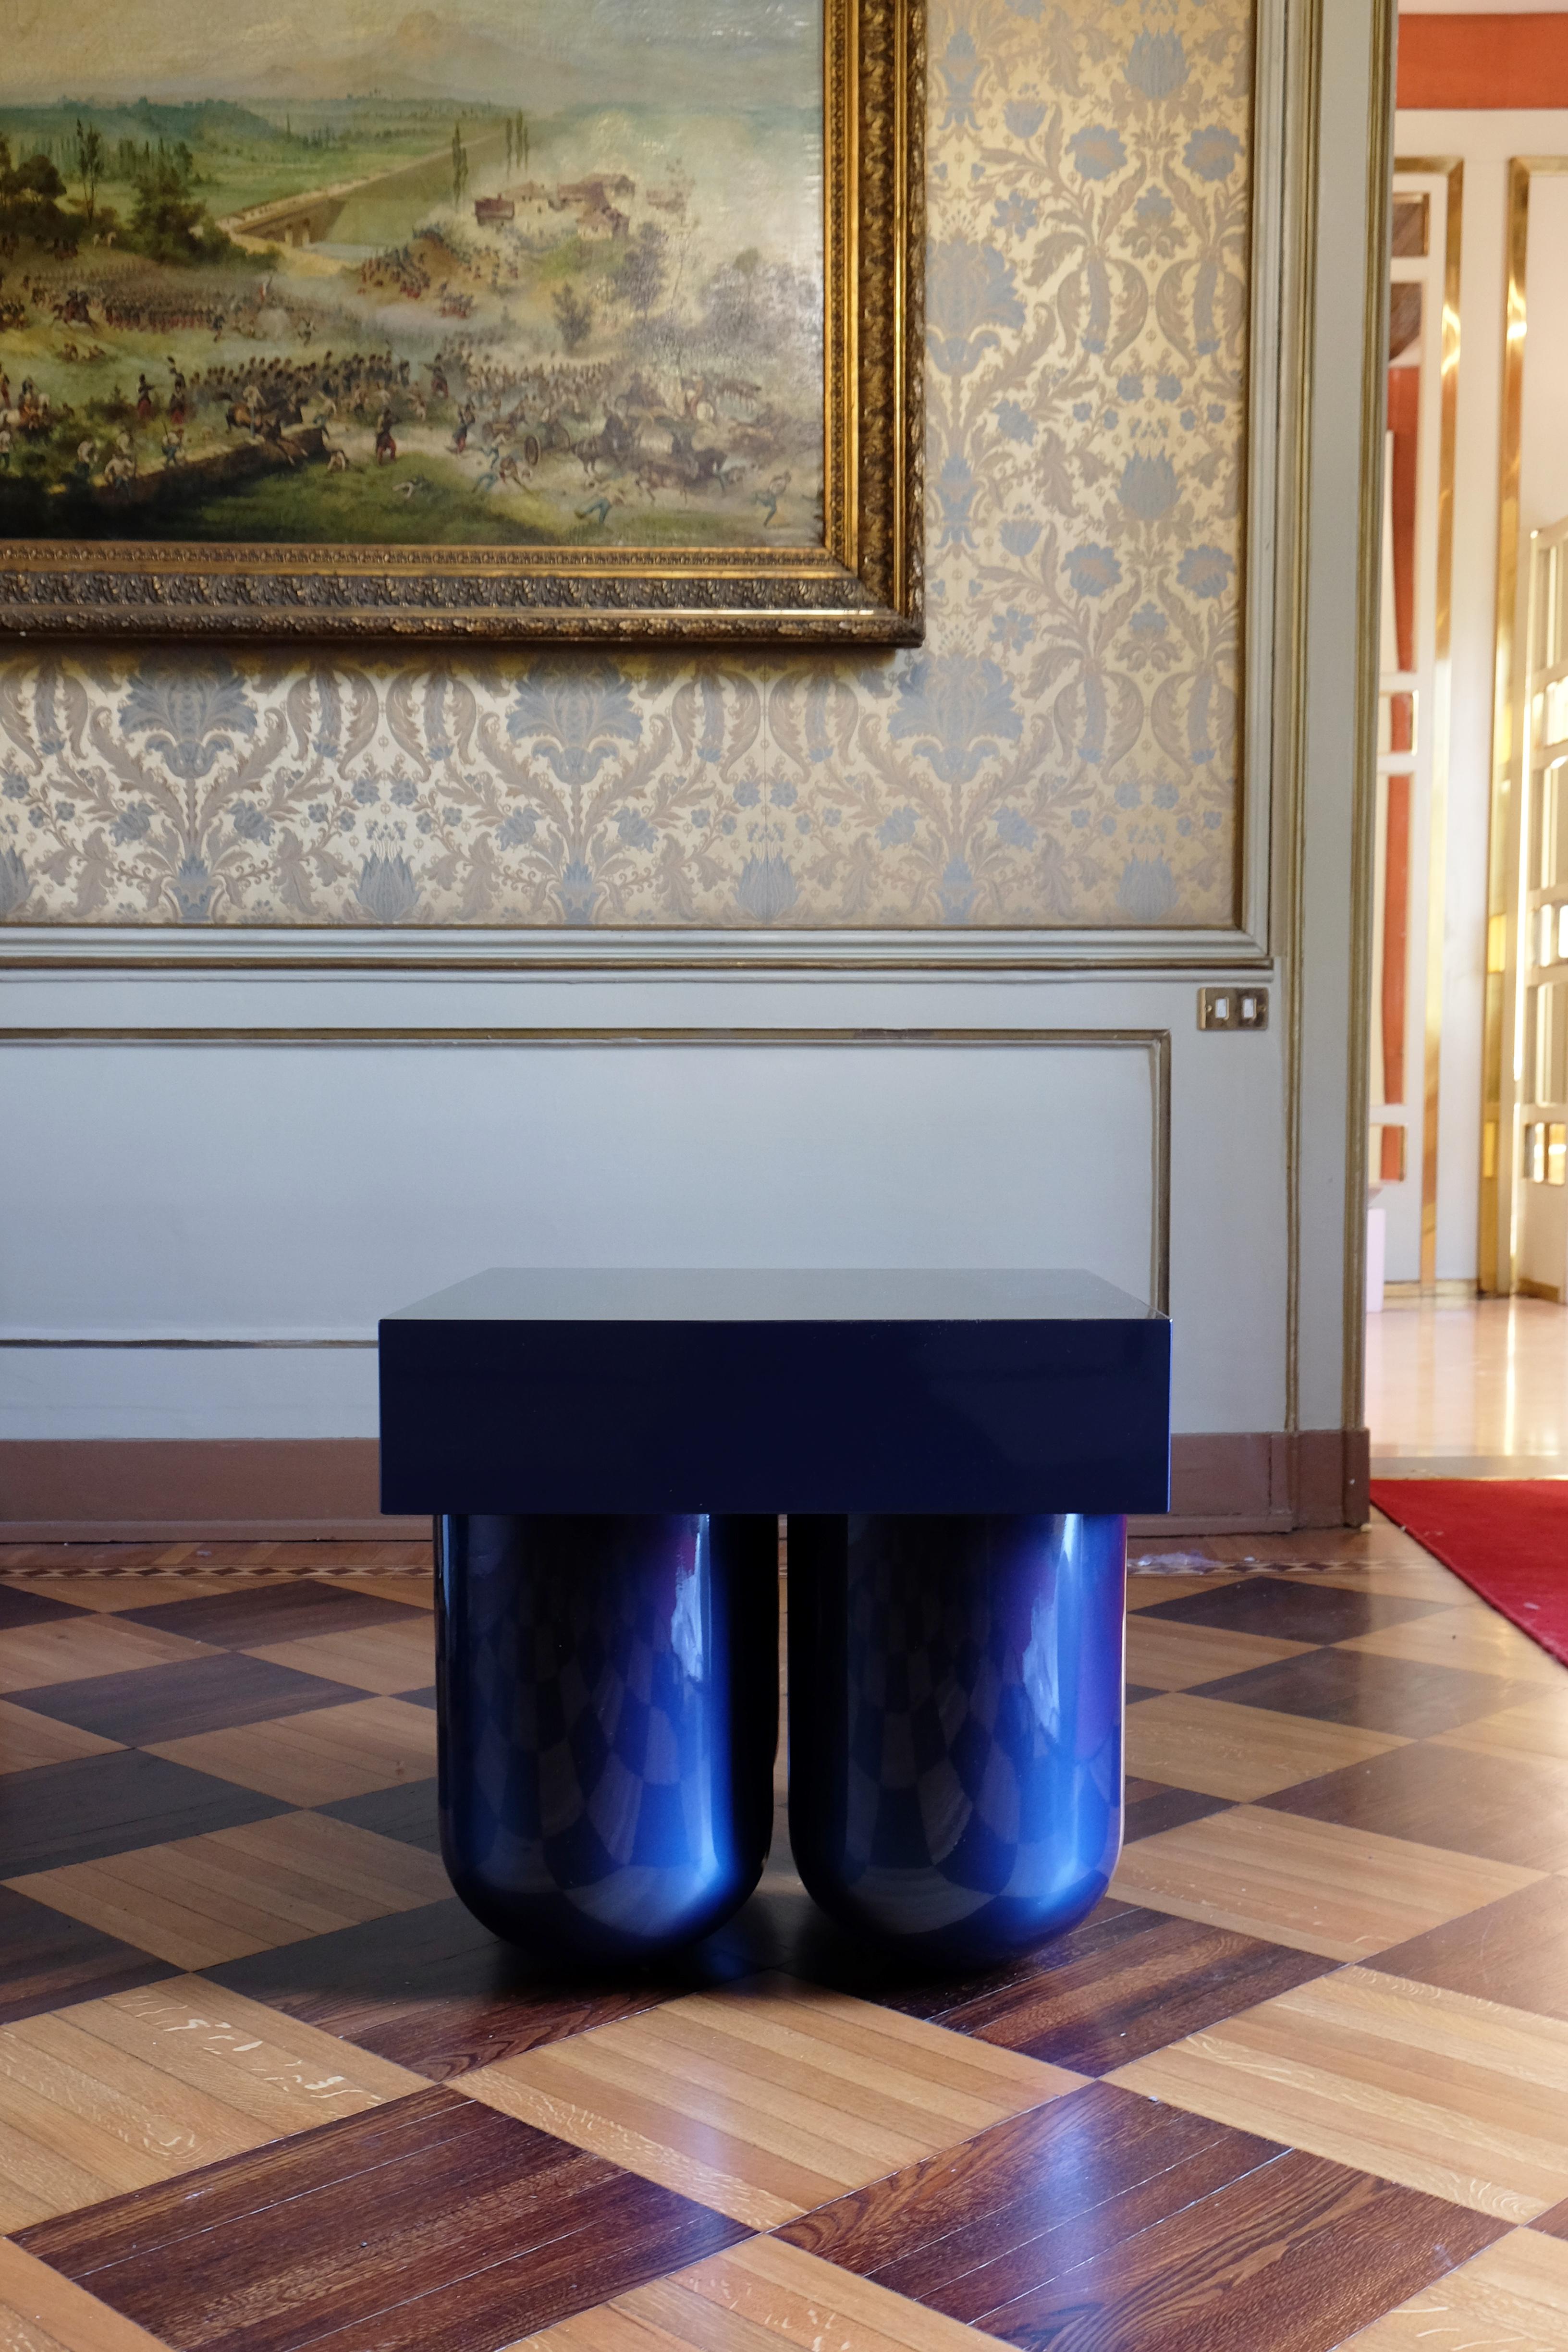 Table n° 5 en bois sculpté bleu de Müsing-Sellés
Dimensions : L 60 x D 60 x H 60 cm
MATERIAL : Bois sculpté, laque métallisée brillante.

Options de finition des couleurs : Marron ou rouge dégradé
 Dégradé indigo ou bleu
Couleur personnalisée